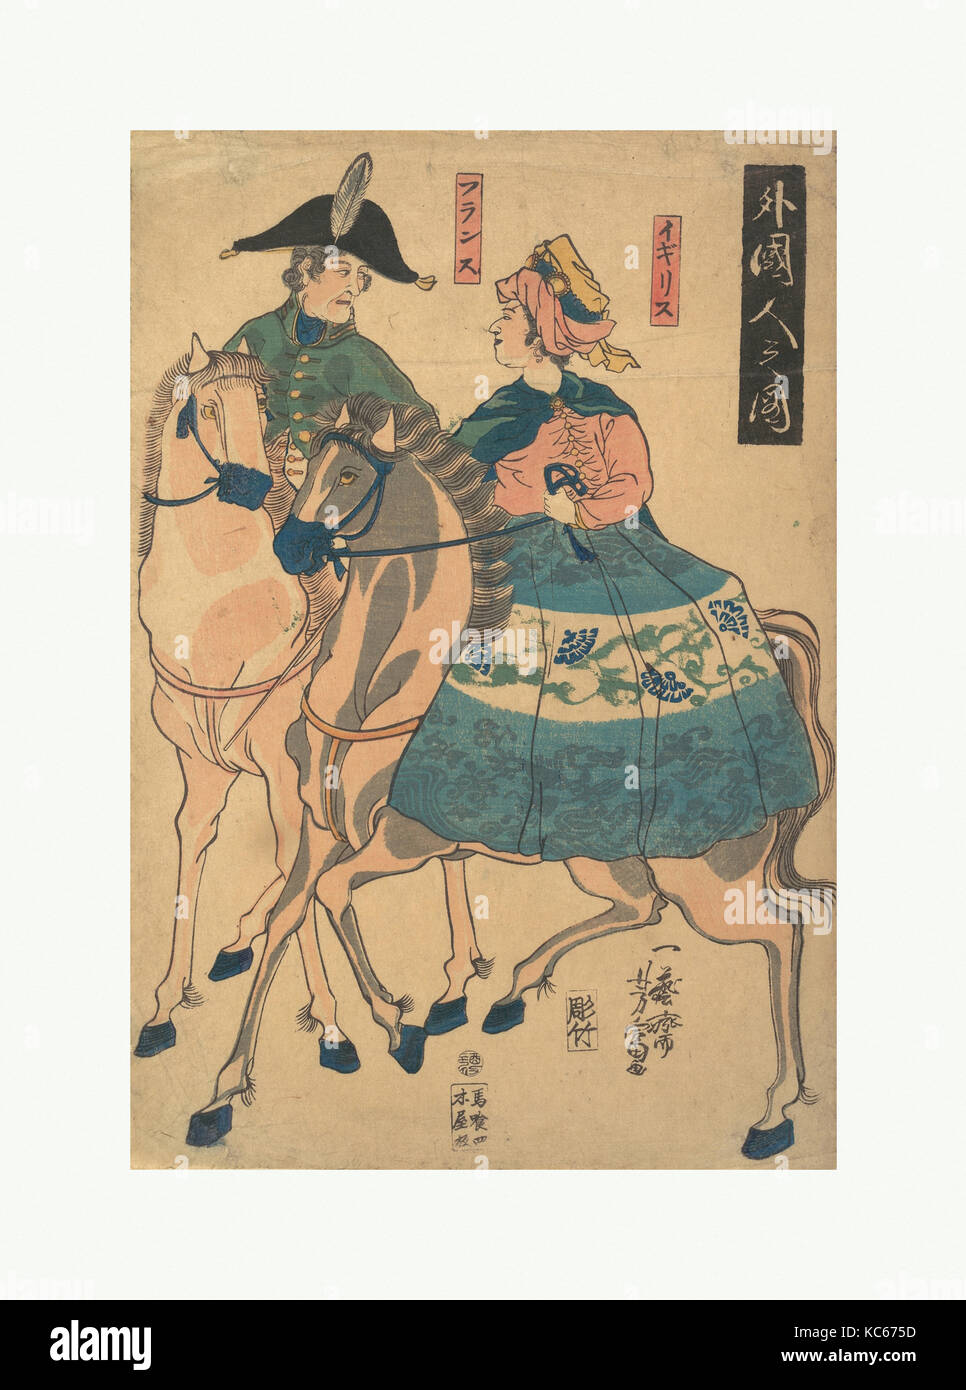 外国人之図, Views of Foreigners (Gaikokujin no zu), Utagawa Yoshitomi, 1861 Stock Photo